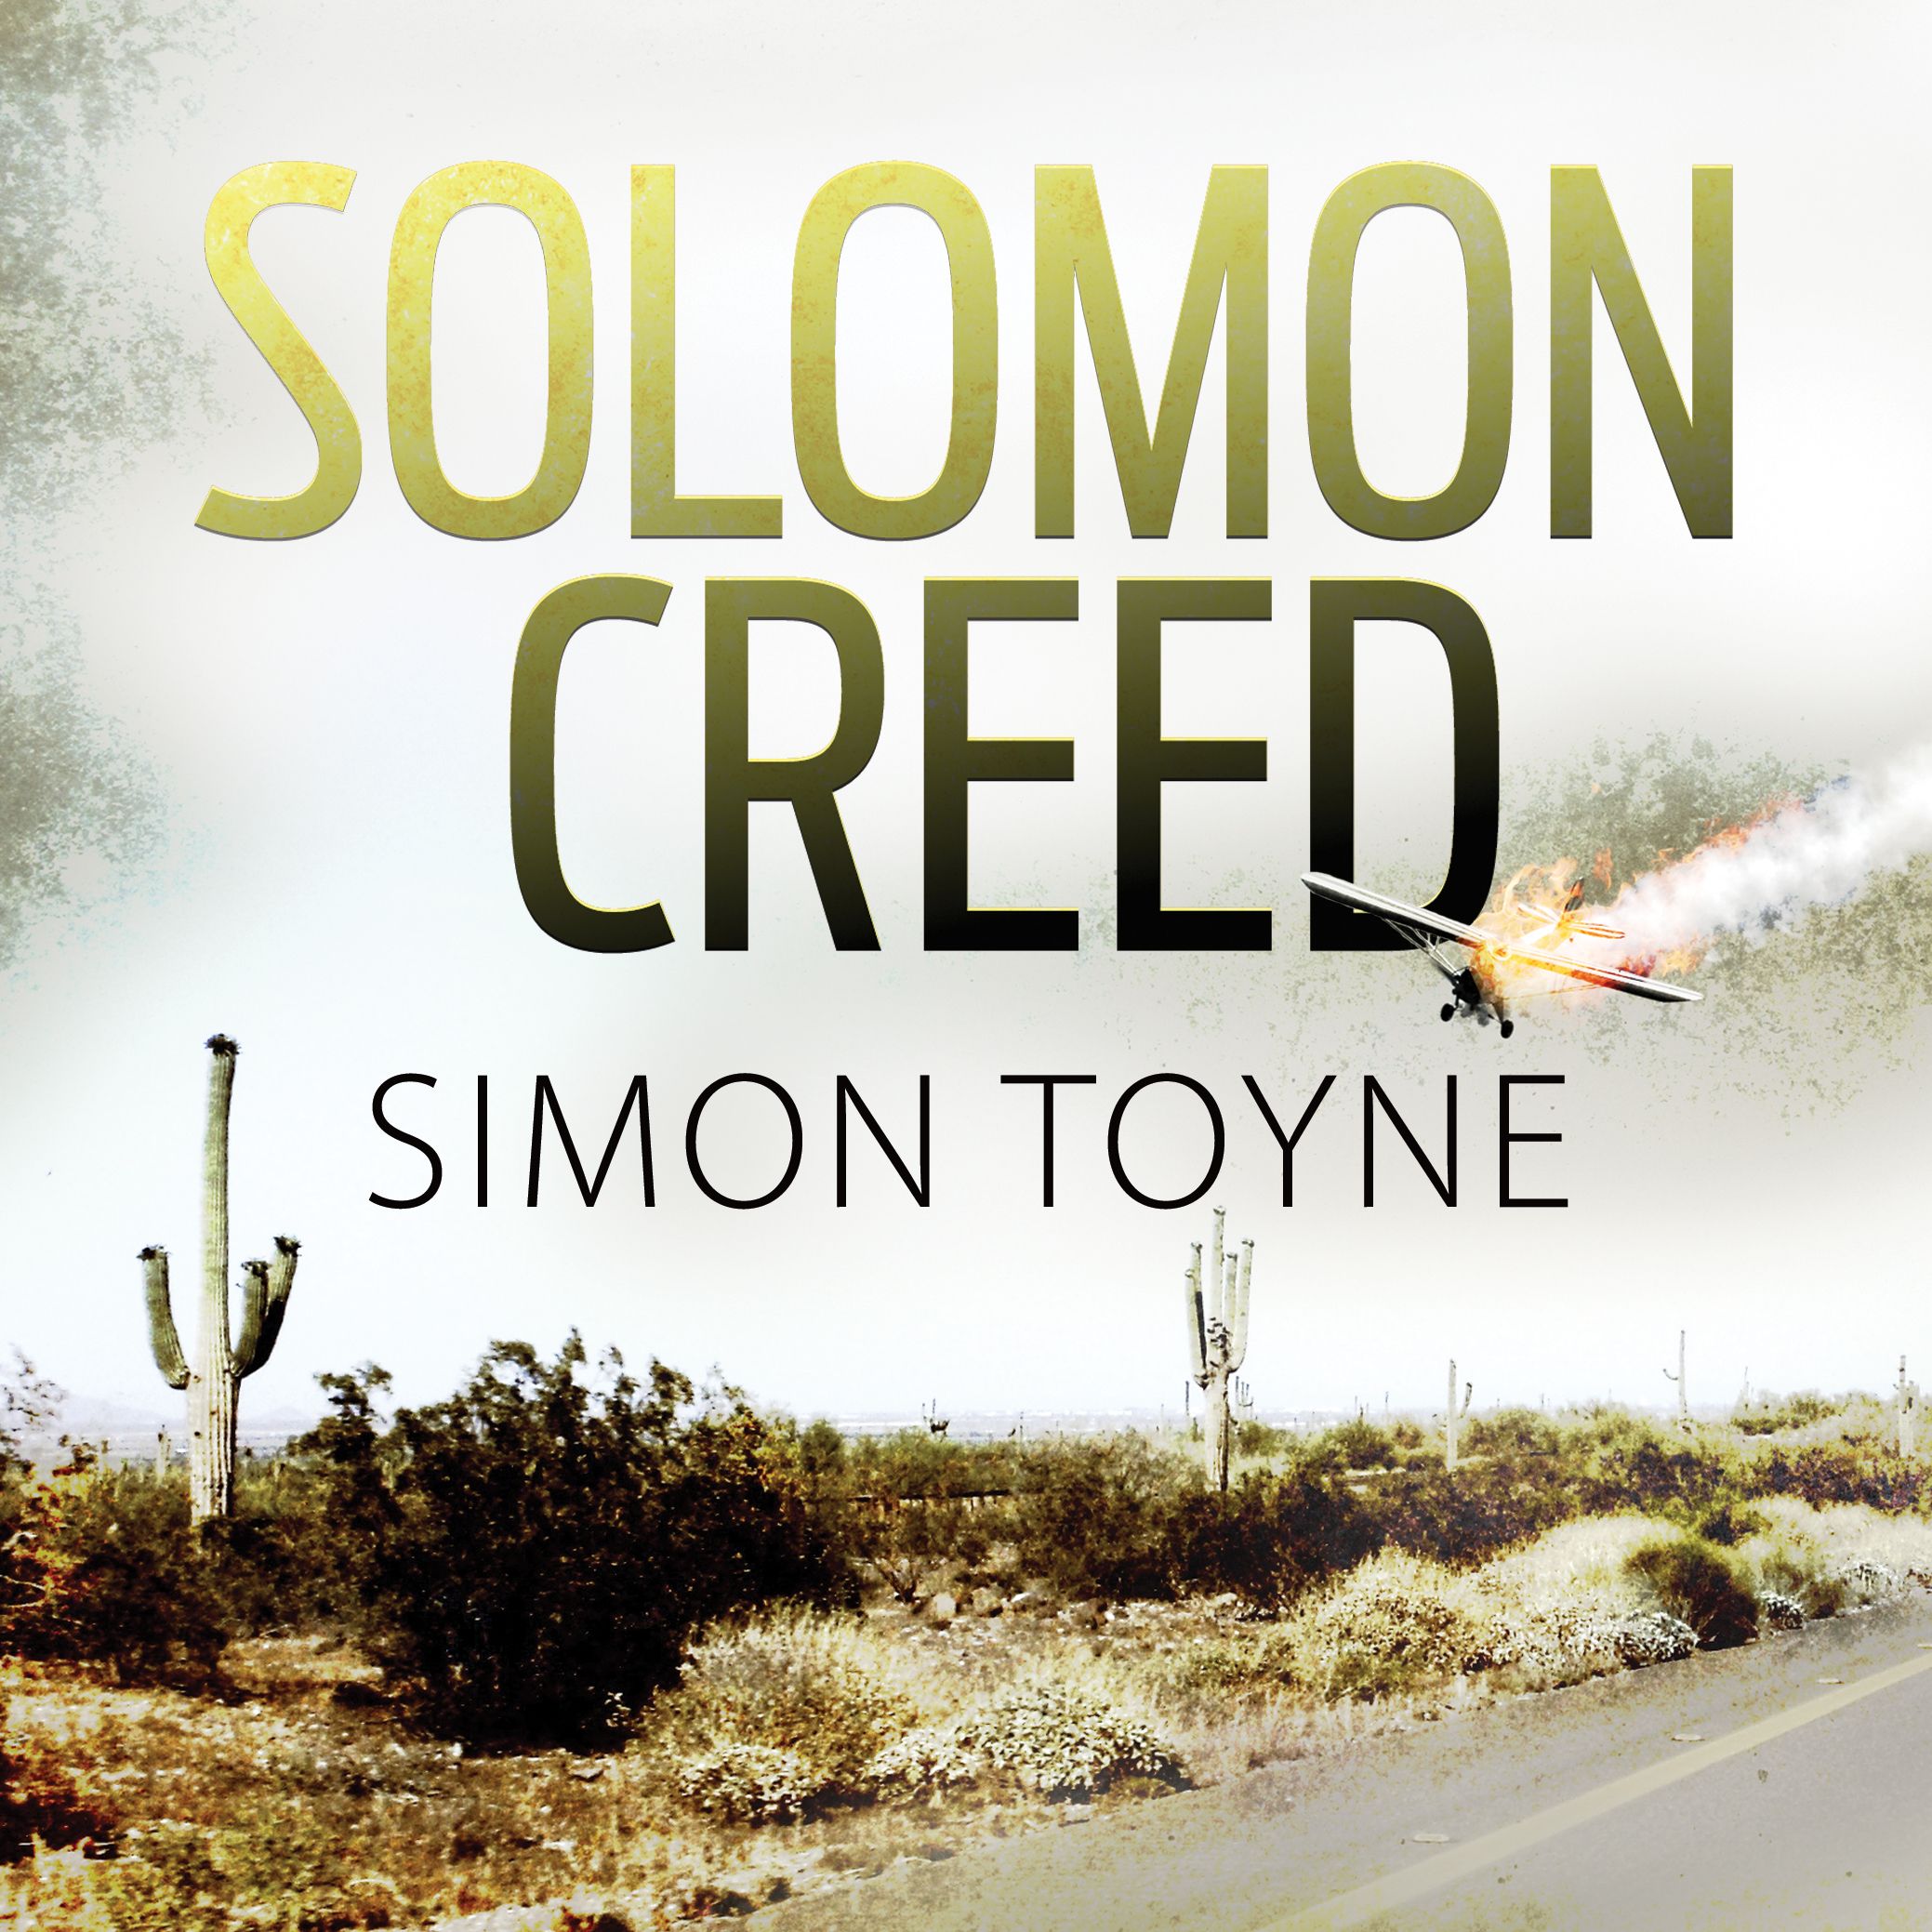 Solomon Creed, lydbog af Simon Toyne